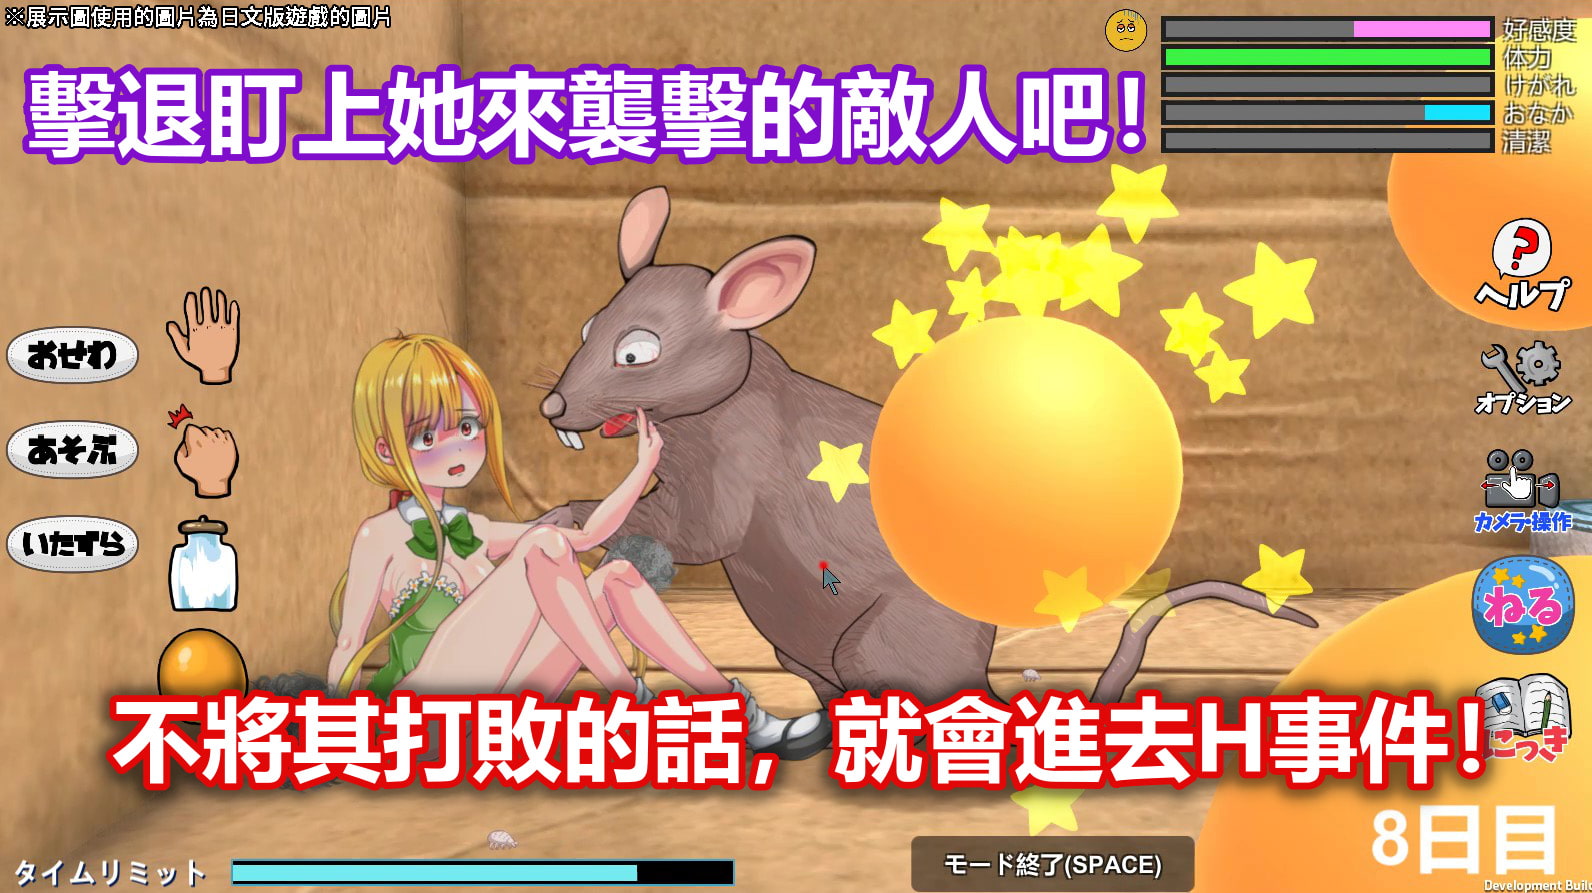 【獵奇】１８禁遊戲《Little Life》官方中文版DLsite上架！撿個超小型美少女當寵物！